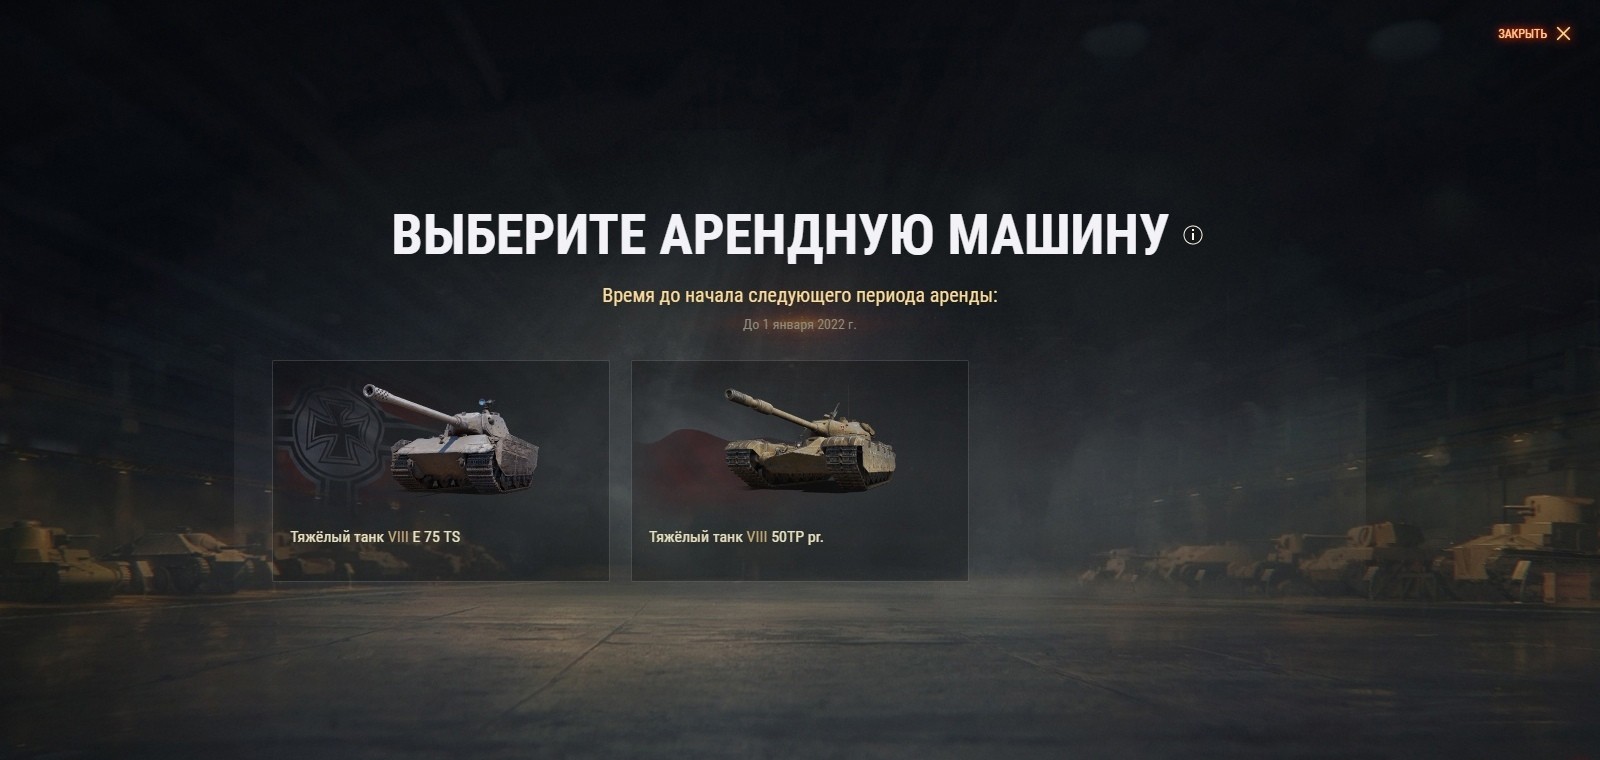 С задержкой, но сегодня стали доступны арендные танки для пользователей тарифа «Игровой» на месяц декабрь 2021.